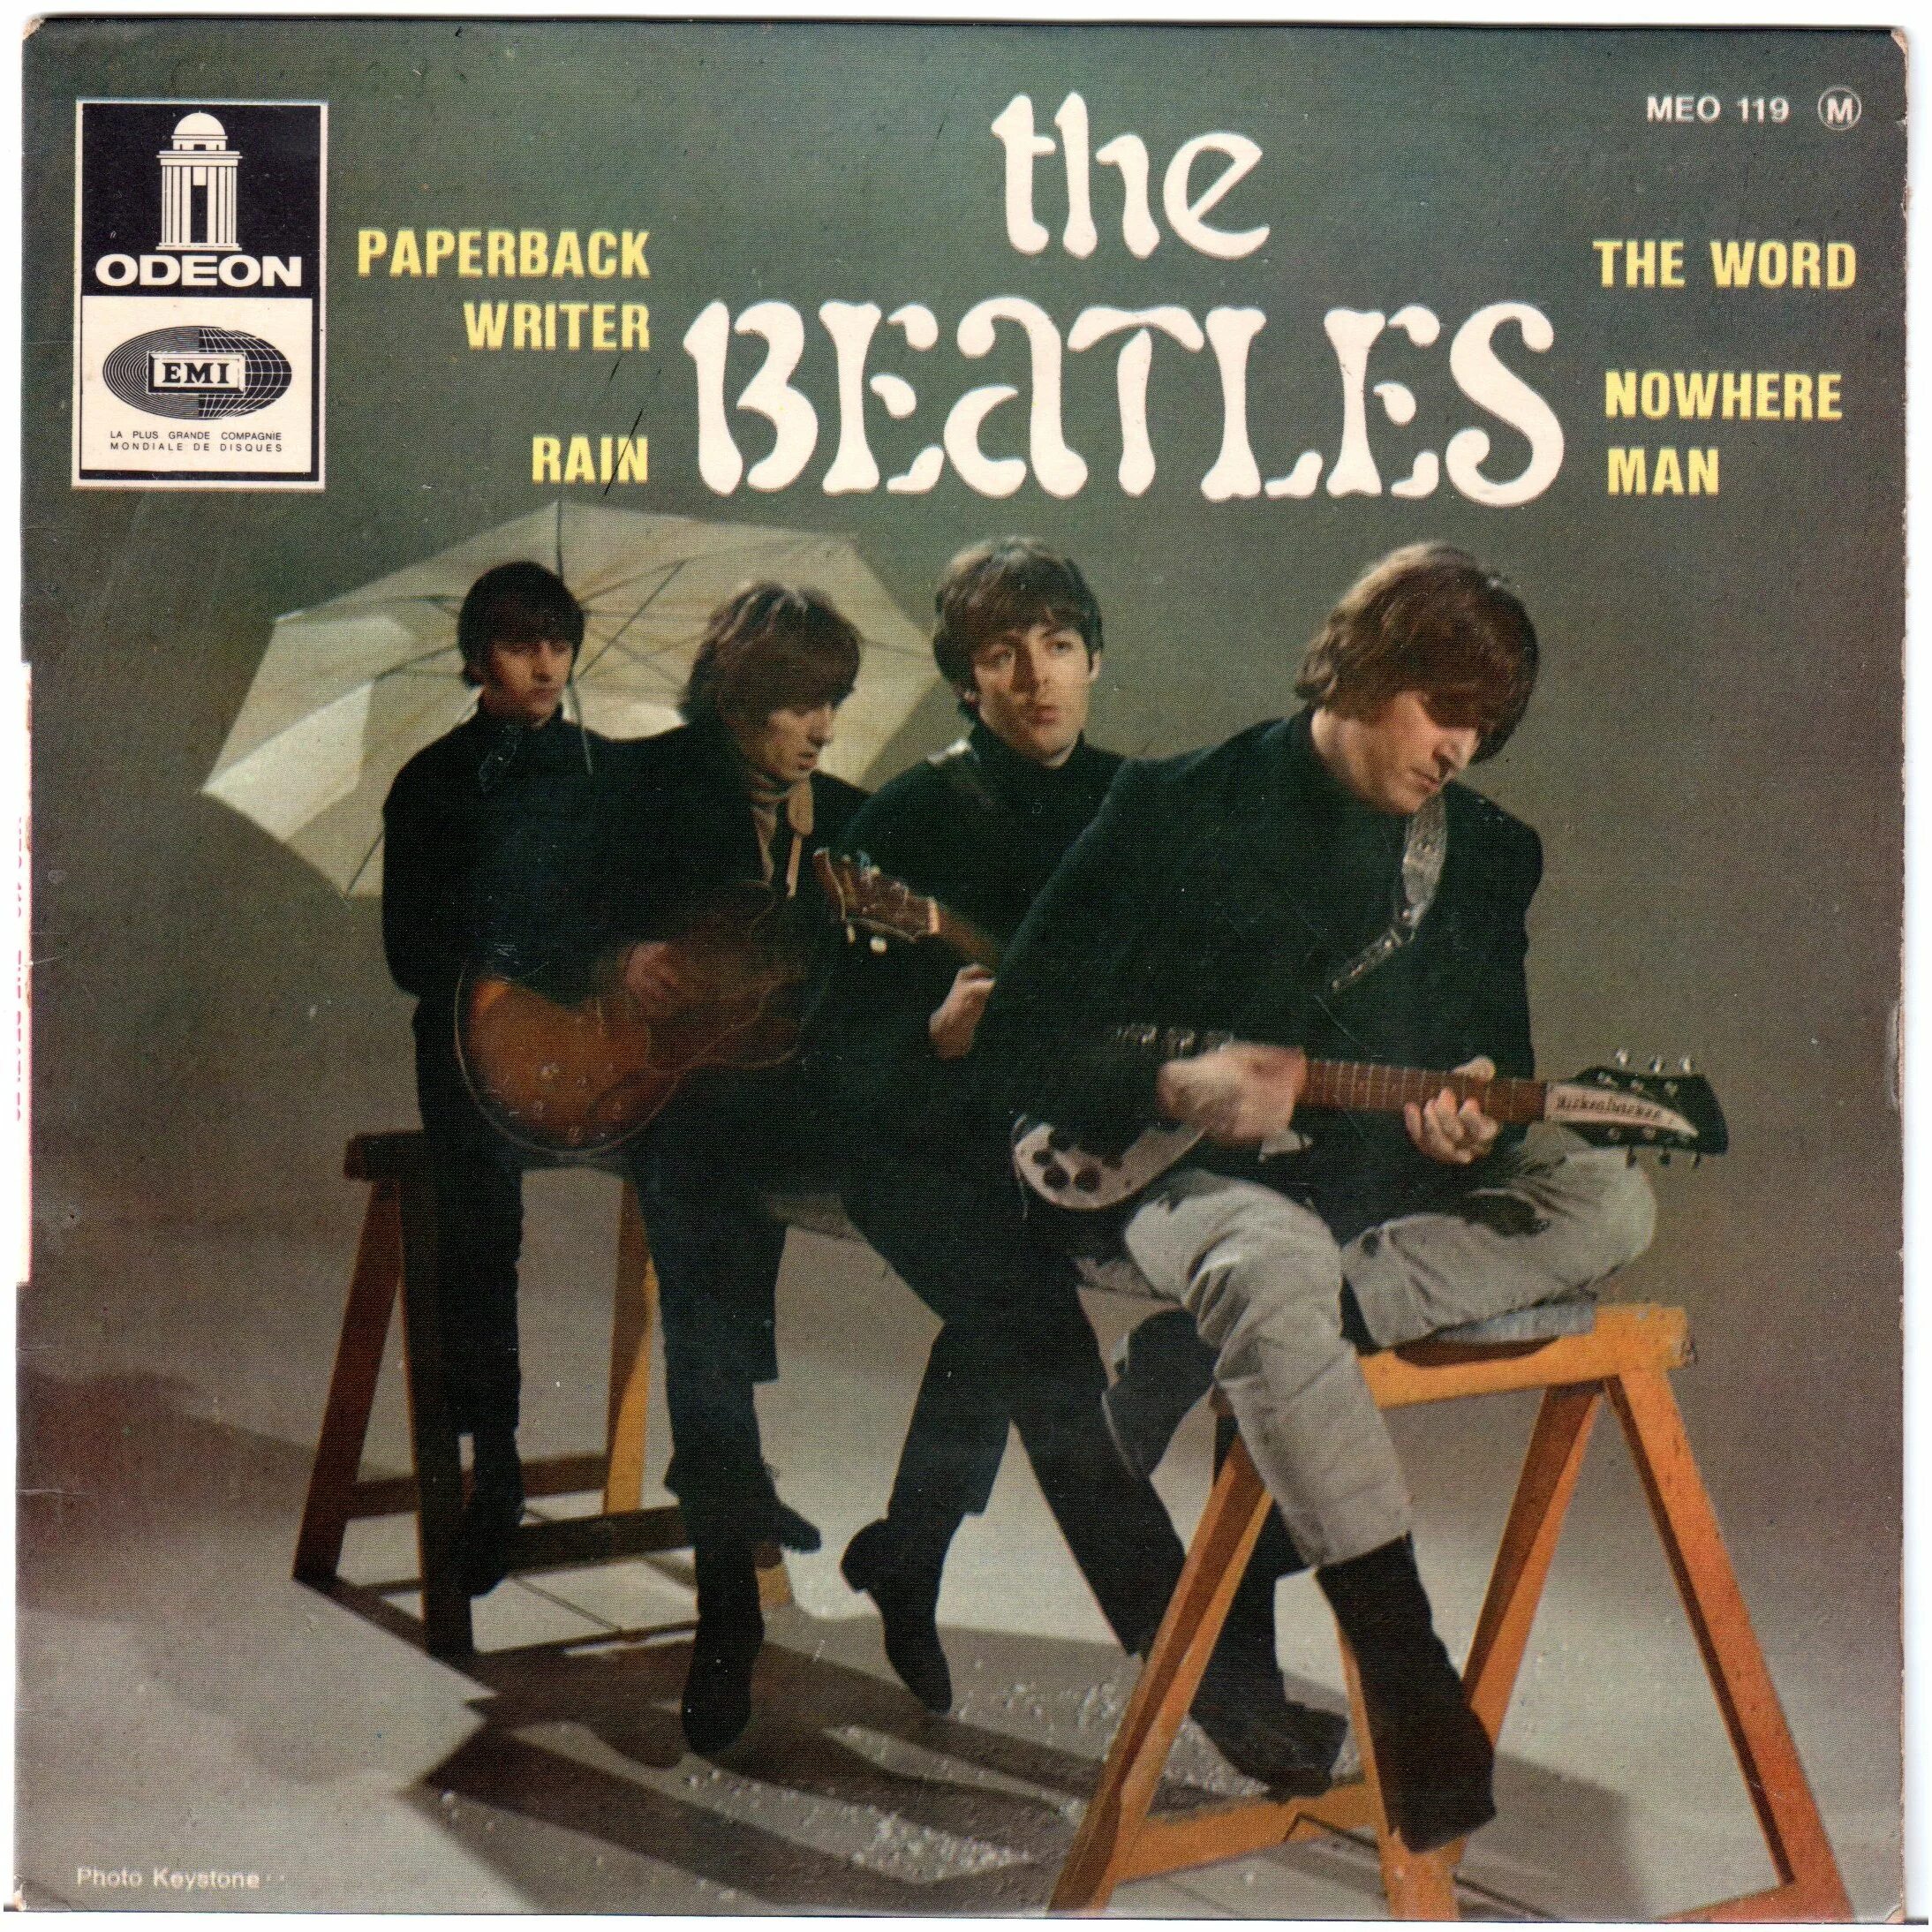 Желтая в песне битлз. The Beatles - Paperback writer (1966). The Beatles Single обложки. The Beatles Paperback writer & Rain.